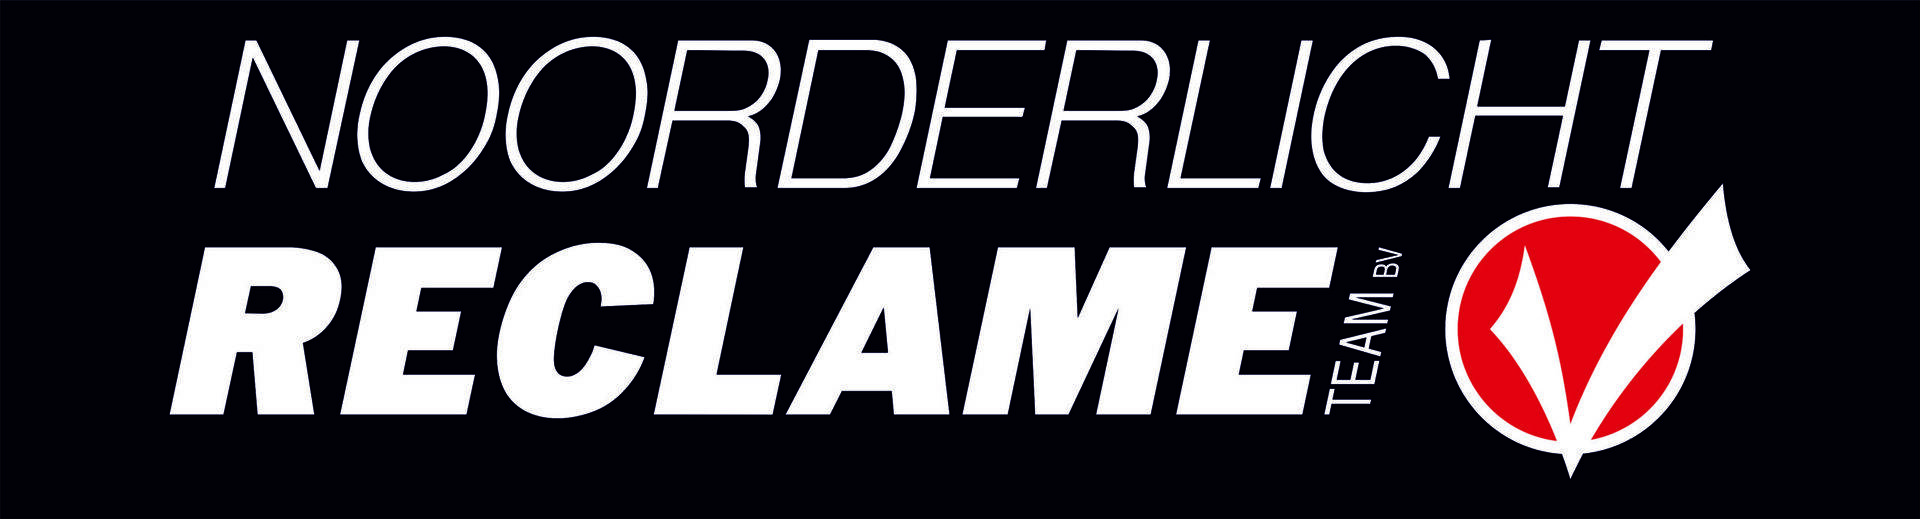 Noorderlicht Reclame - logo